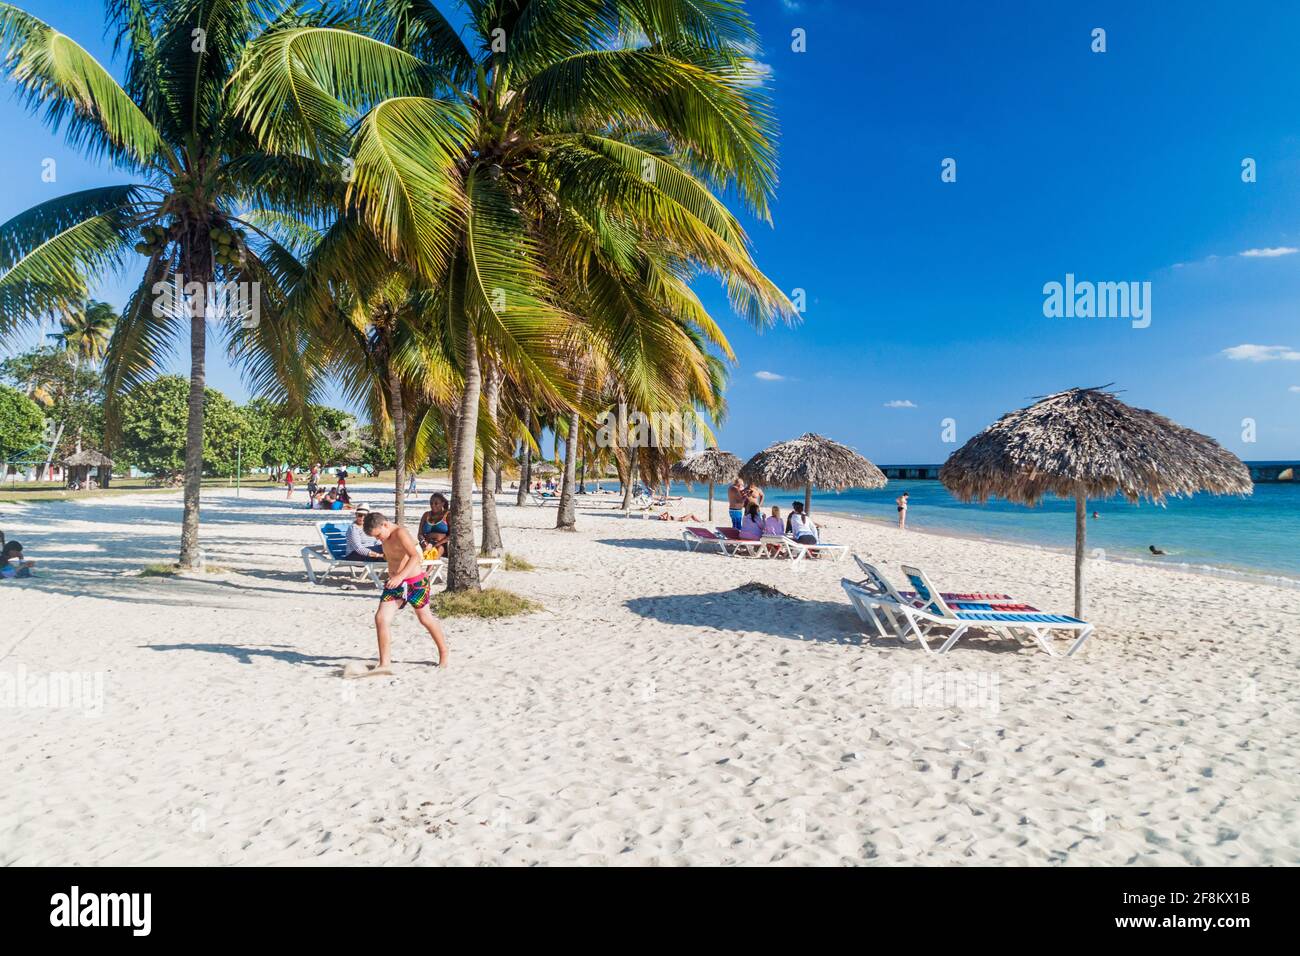 PLAYA GIRON, KUBA - 14. FEB 2016: Touristen am Strand Playa Giron, Kuba. Dieser Strand ist berühmt für seine Rolle während der Invasion der Schweinebucht. Stockfoto